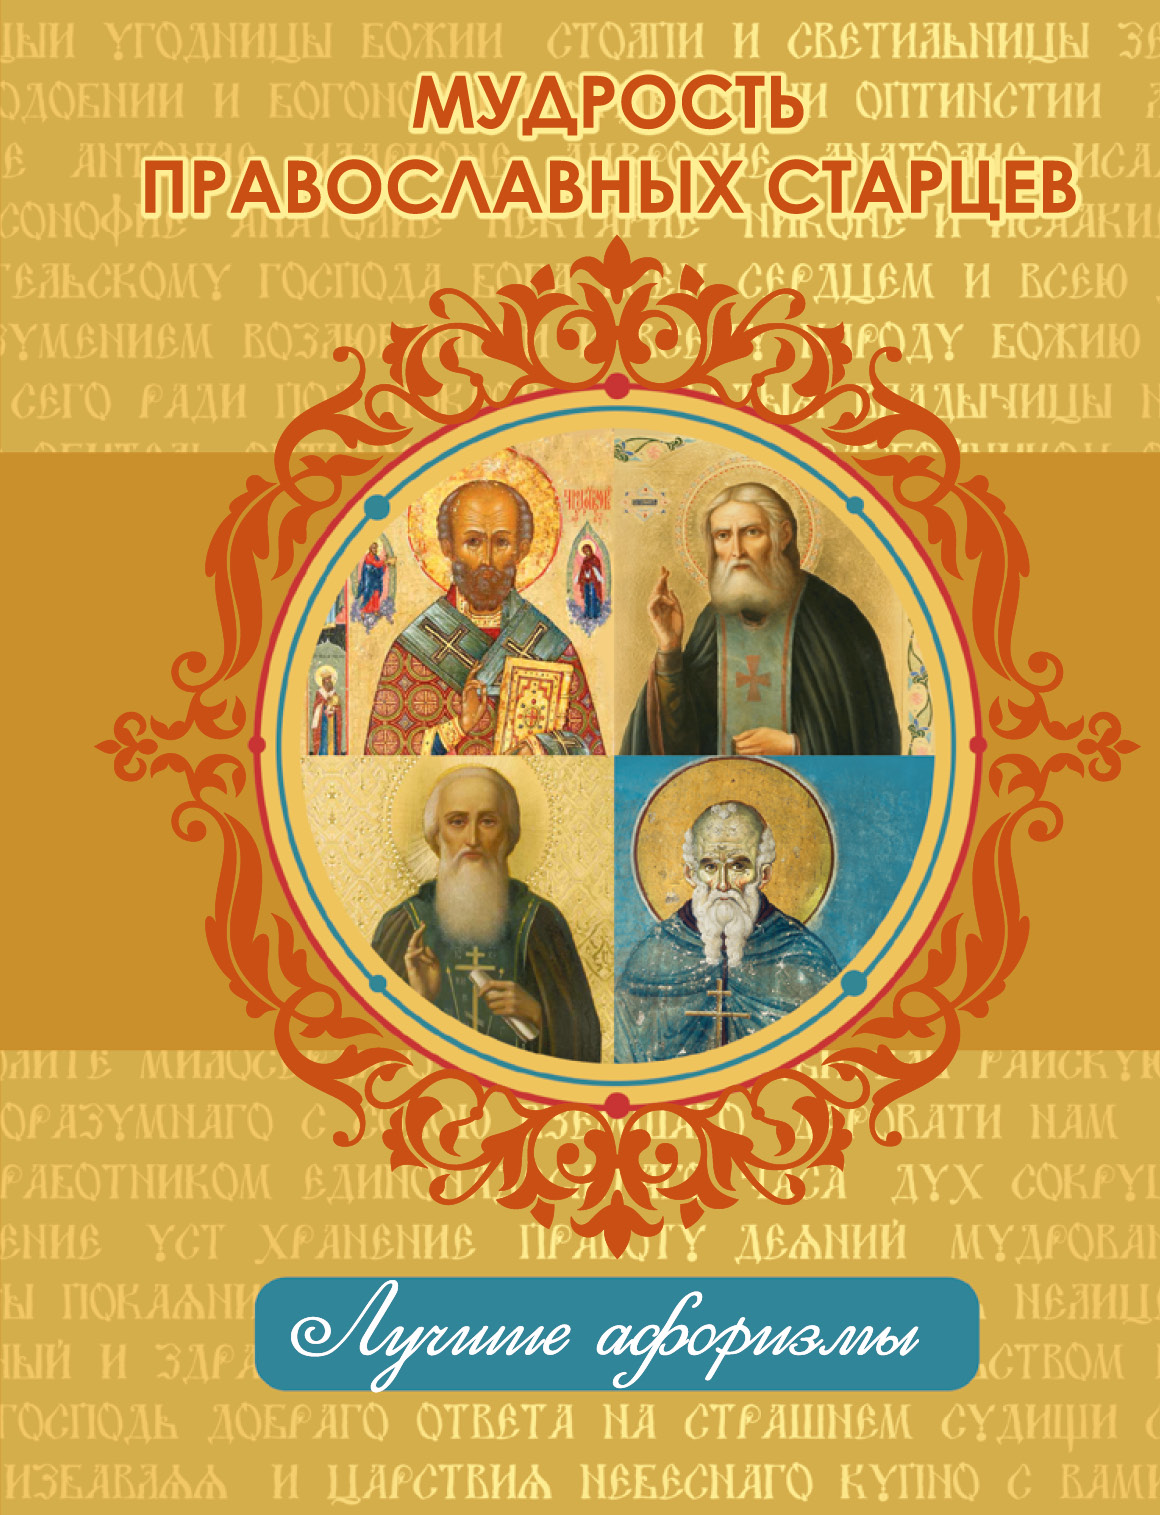  Мудрость православных старцев - страница 0